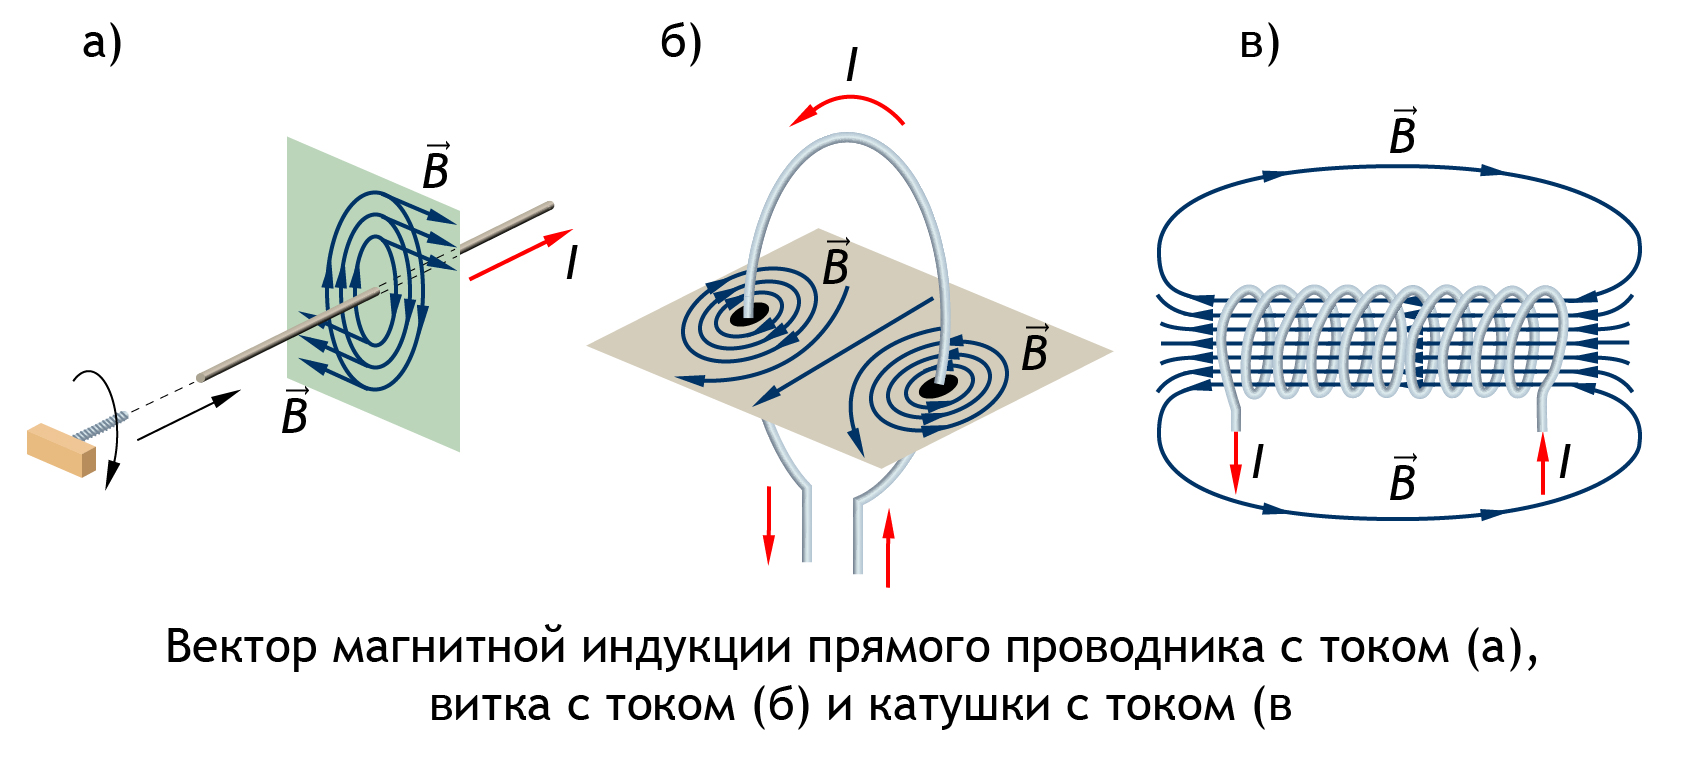 Изобразить магнитное поле витка с током. Вектор магнитного поля прямого проводника. Вектор магнитной индукции прямого проводника. Линии магнитной индукции прямого проводника. Силовые линии магнитного поля рамки с током.